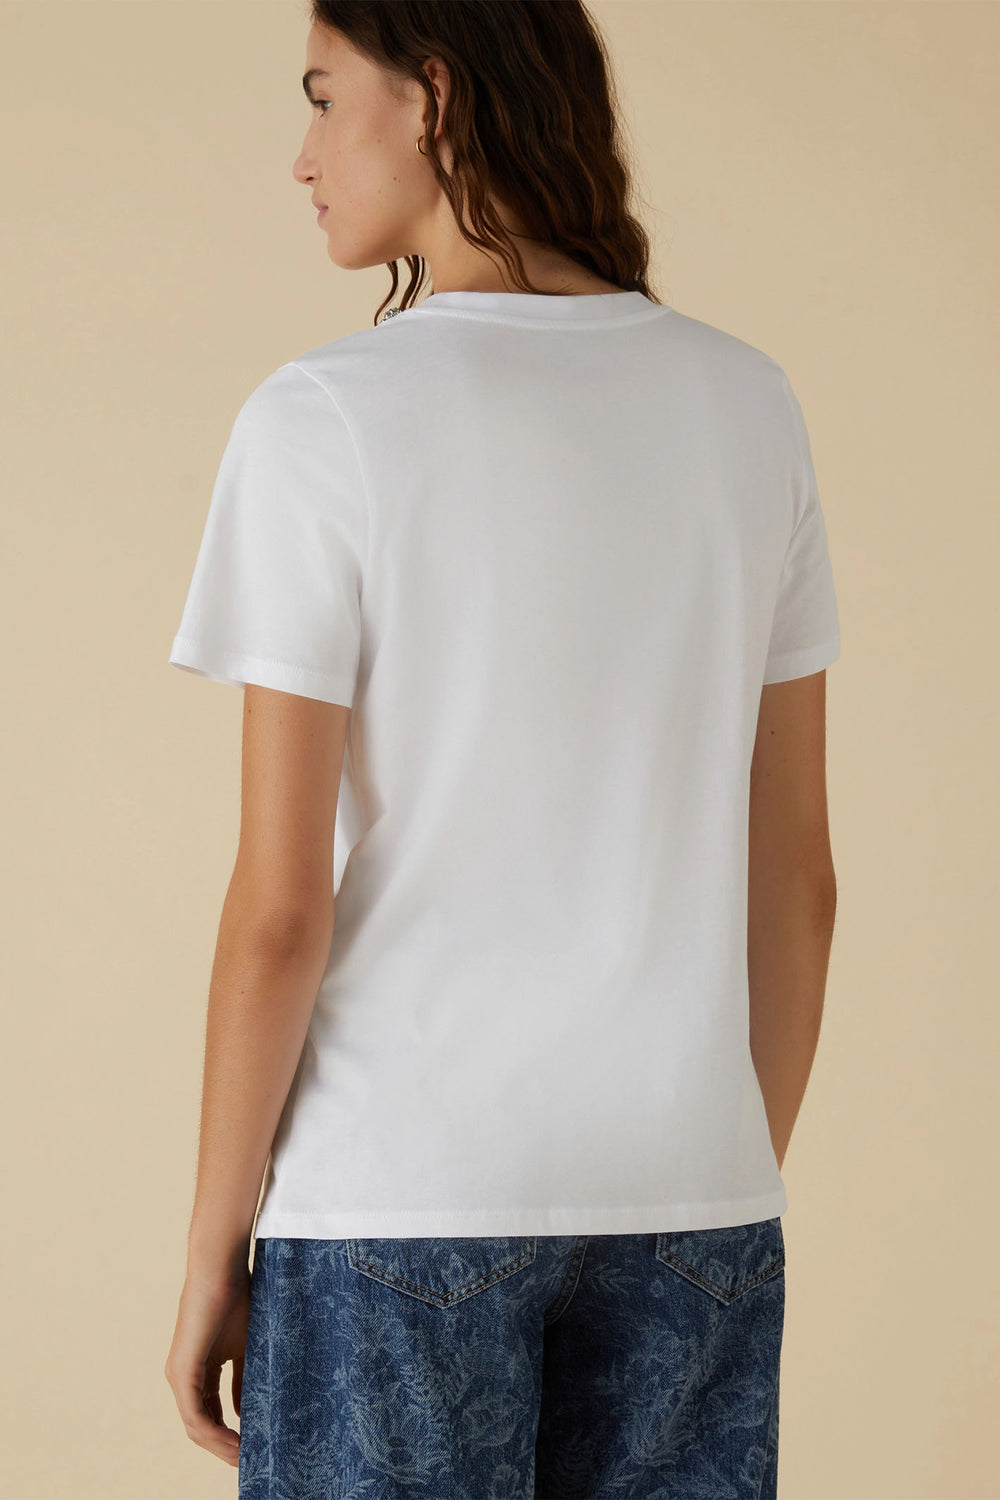 Emme Ordine 2415971052200 White Rhinestone T-Shirt - Olivia Grace Fashion